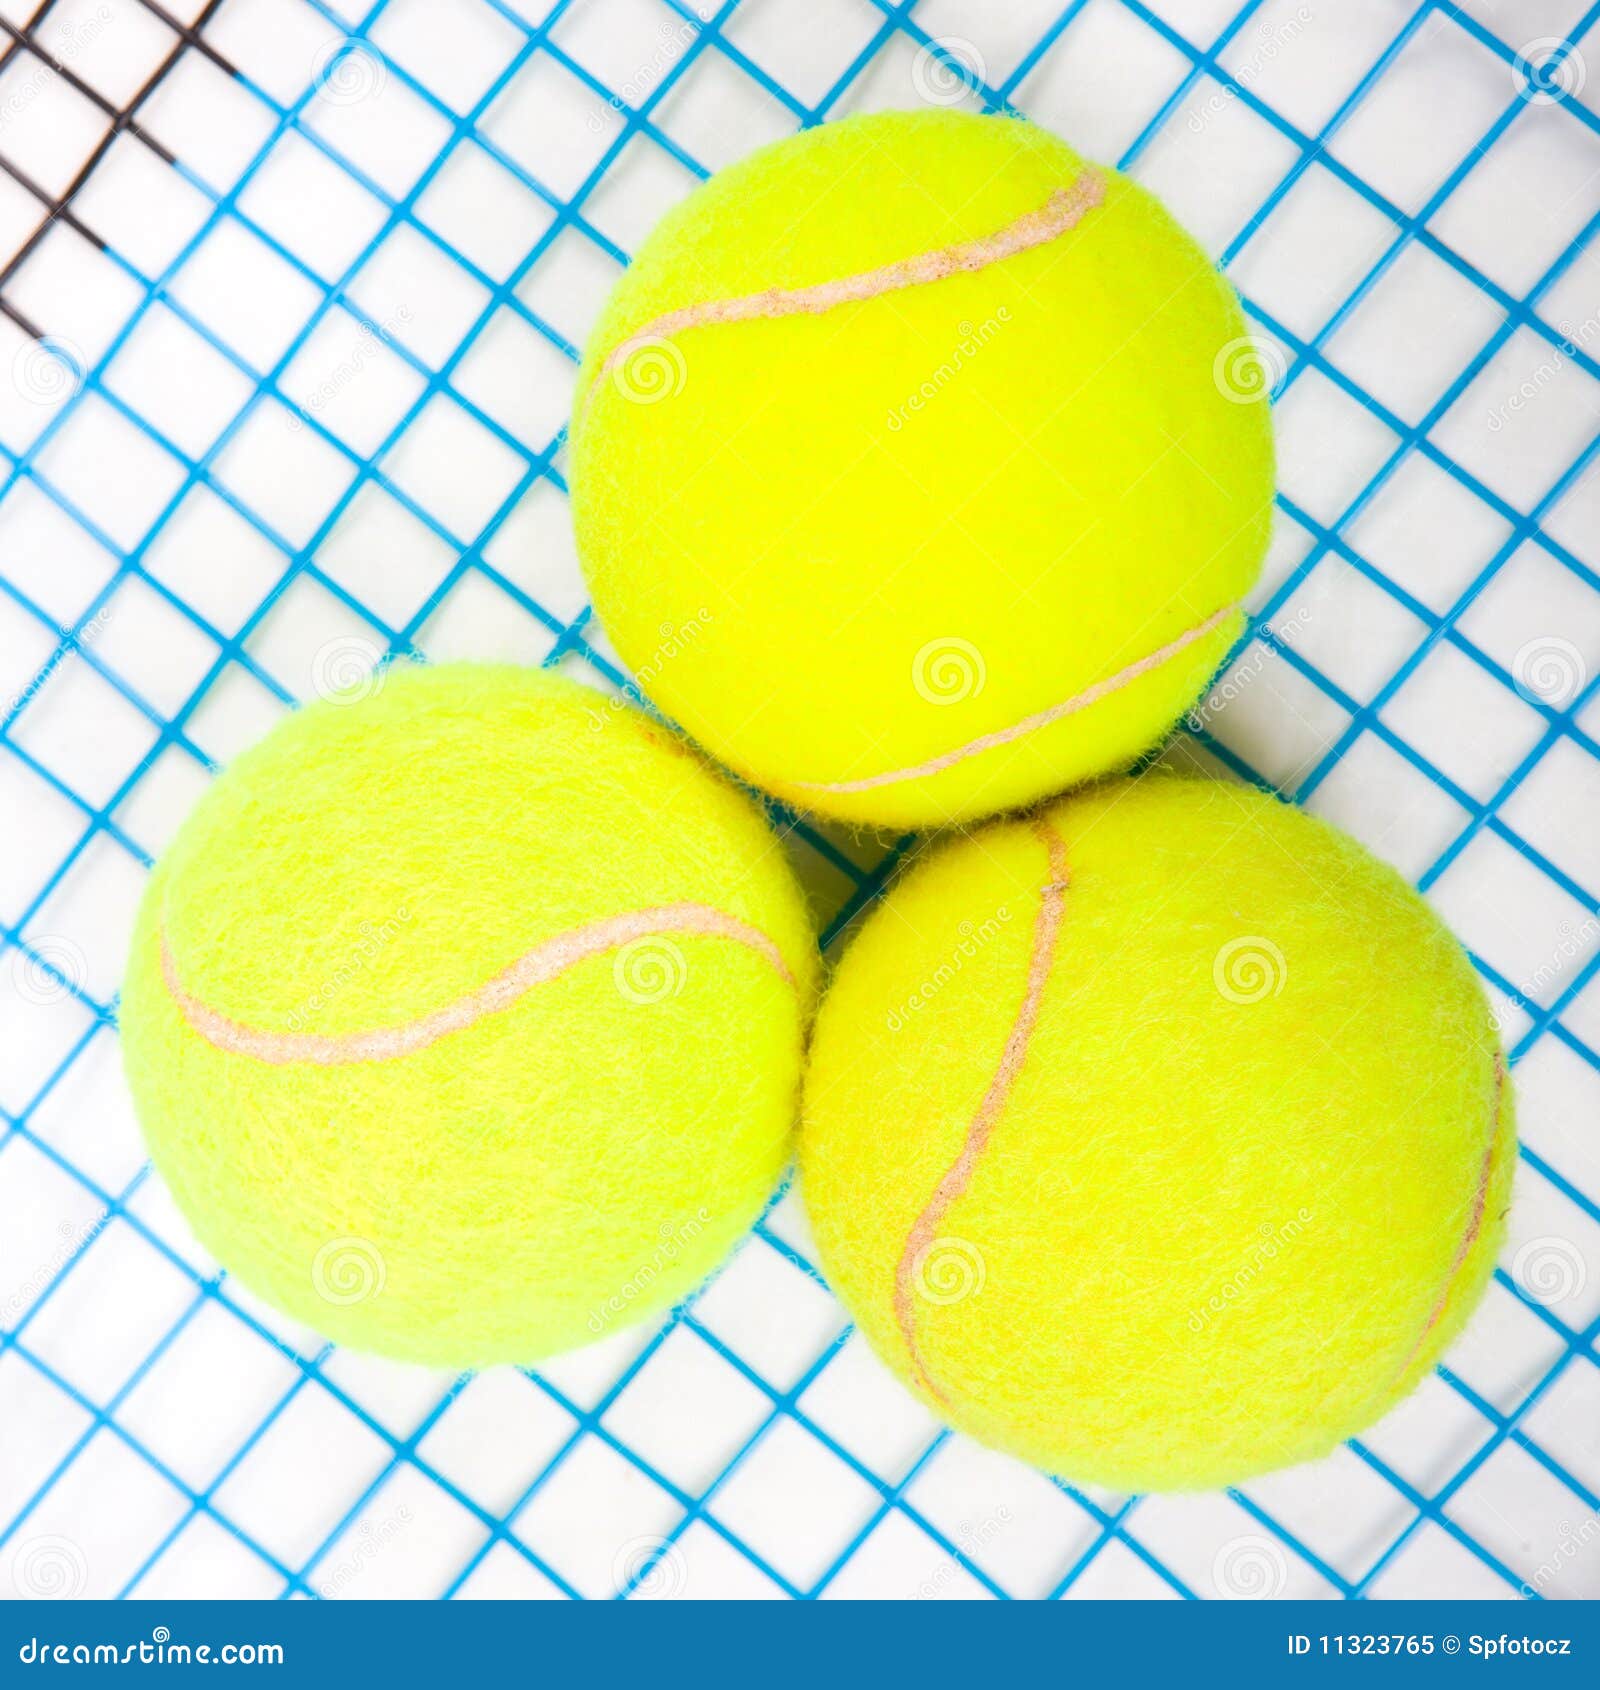 tennis raquet with a tennis balls